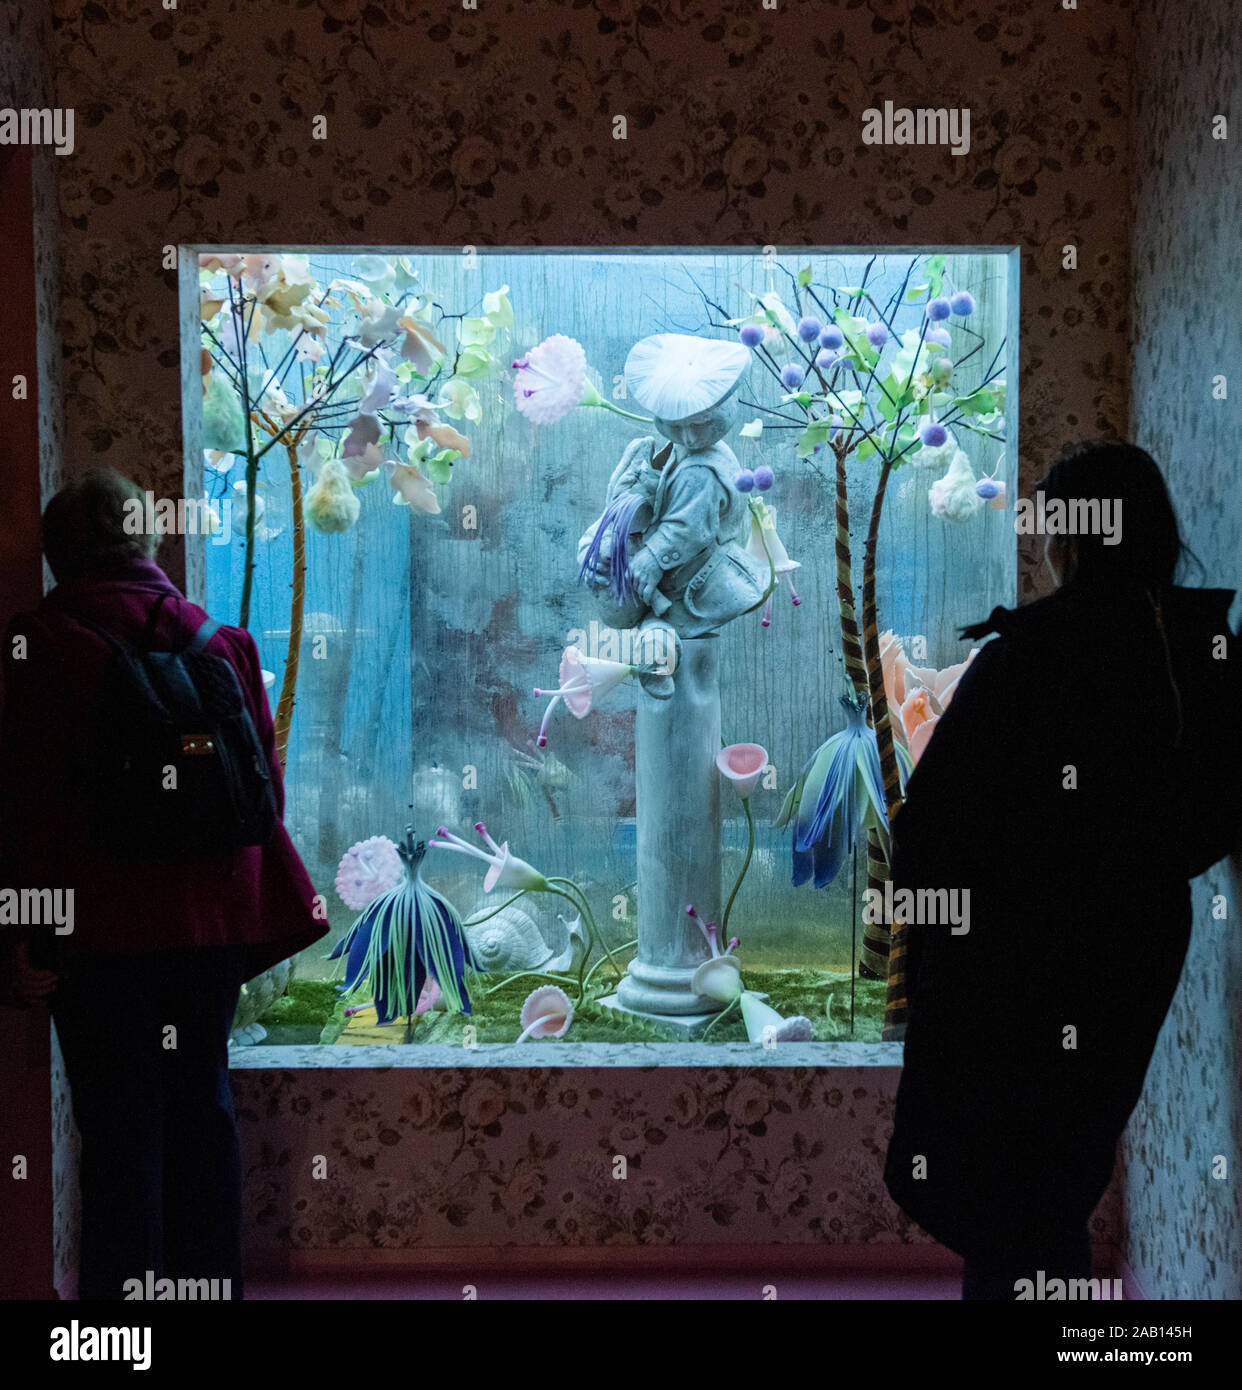 Les visiteurs qui cherchent à exposer à la Tim Walker 'belles choses' exposition au V&A Museum, Nov 2019. South Kensington, Londres, Angleterre, Royaume-Uni. Banque D'Images